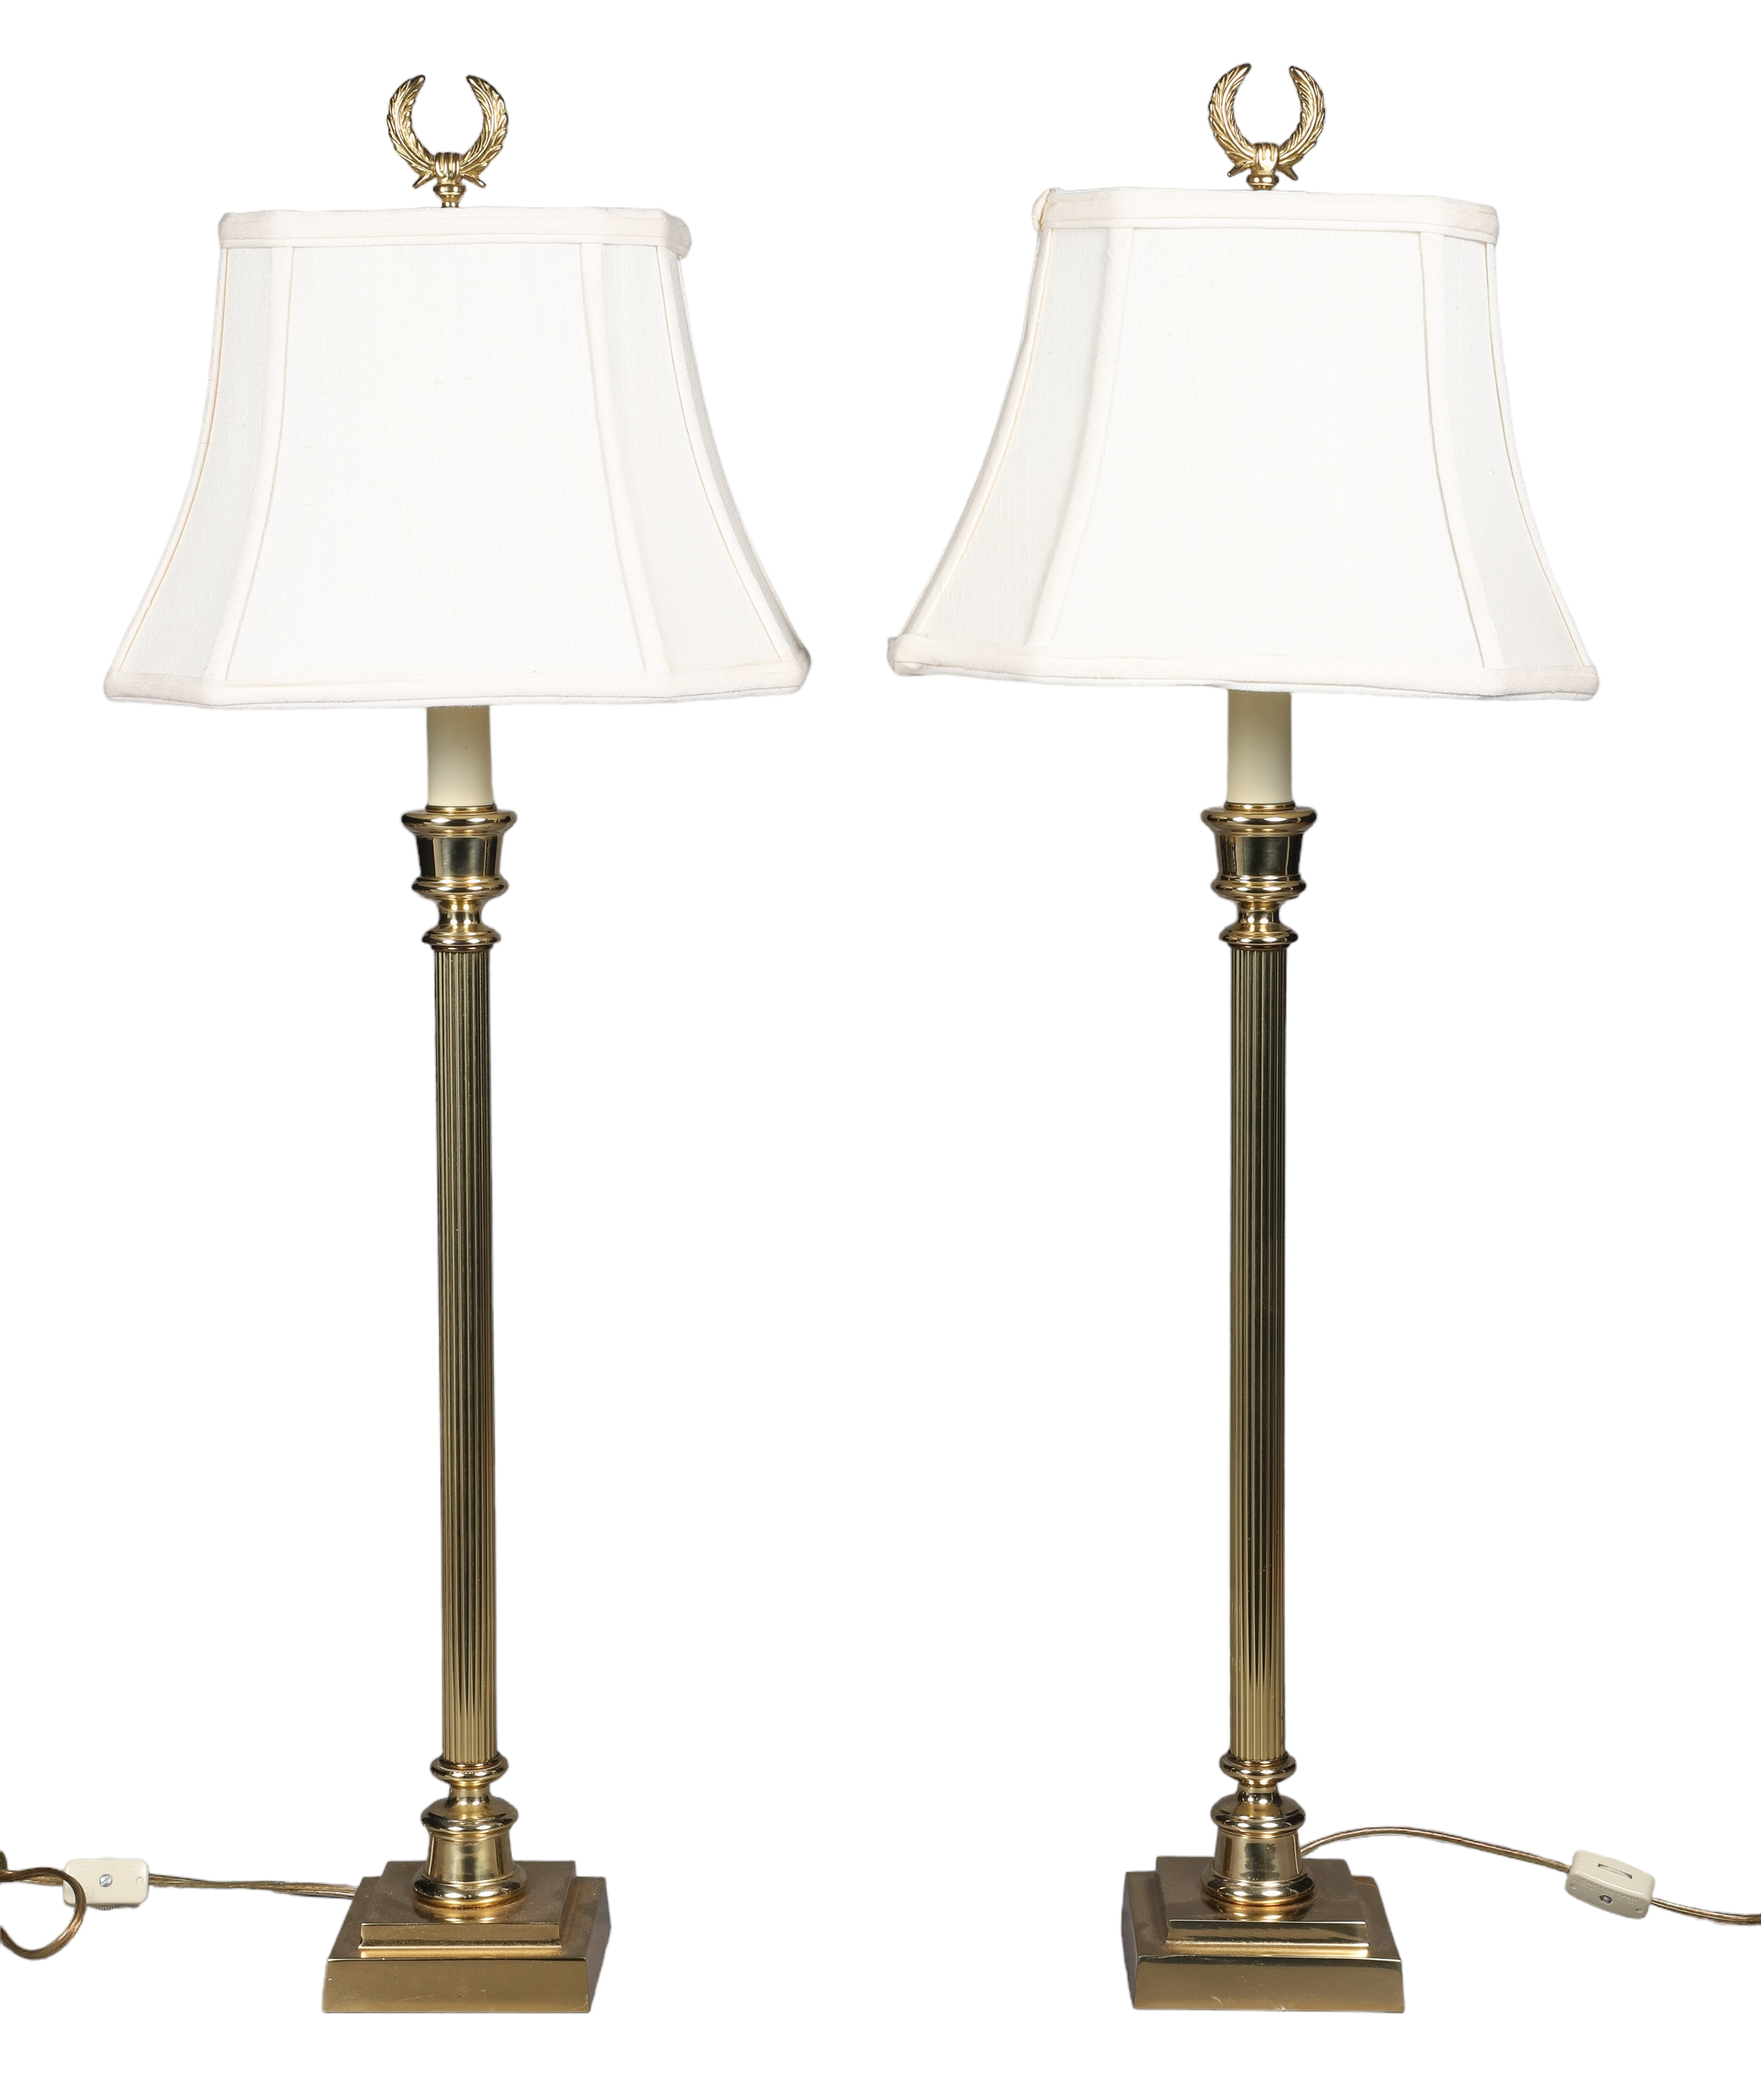 Brass column candlestick lamp pair  2e1645